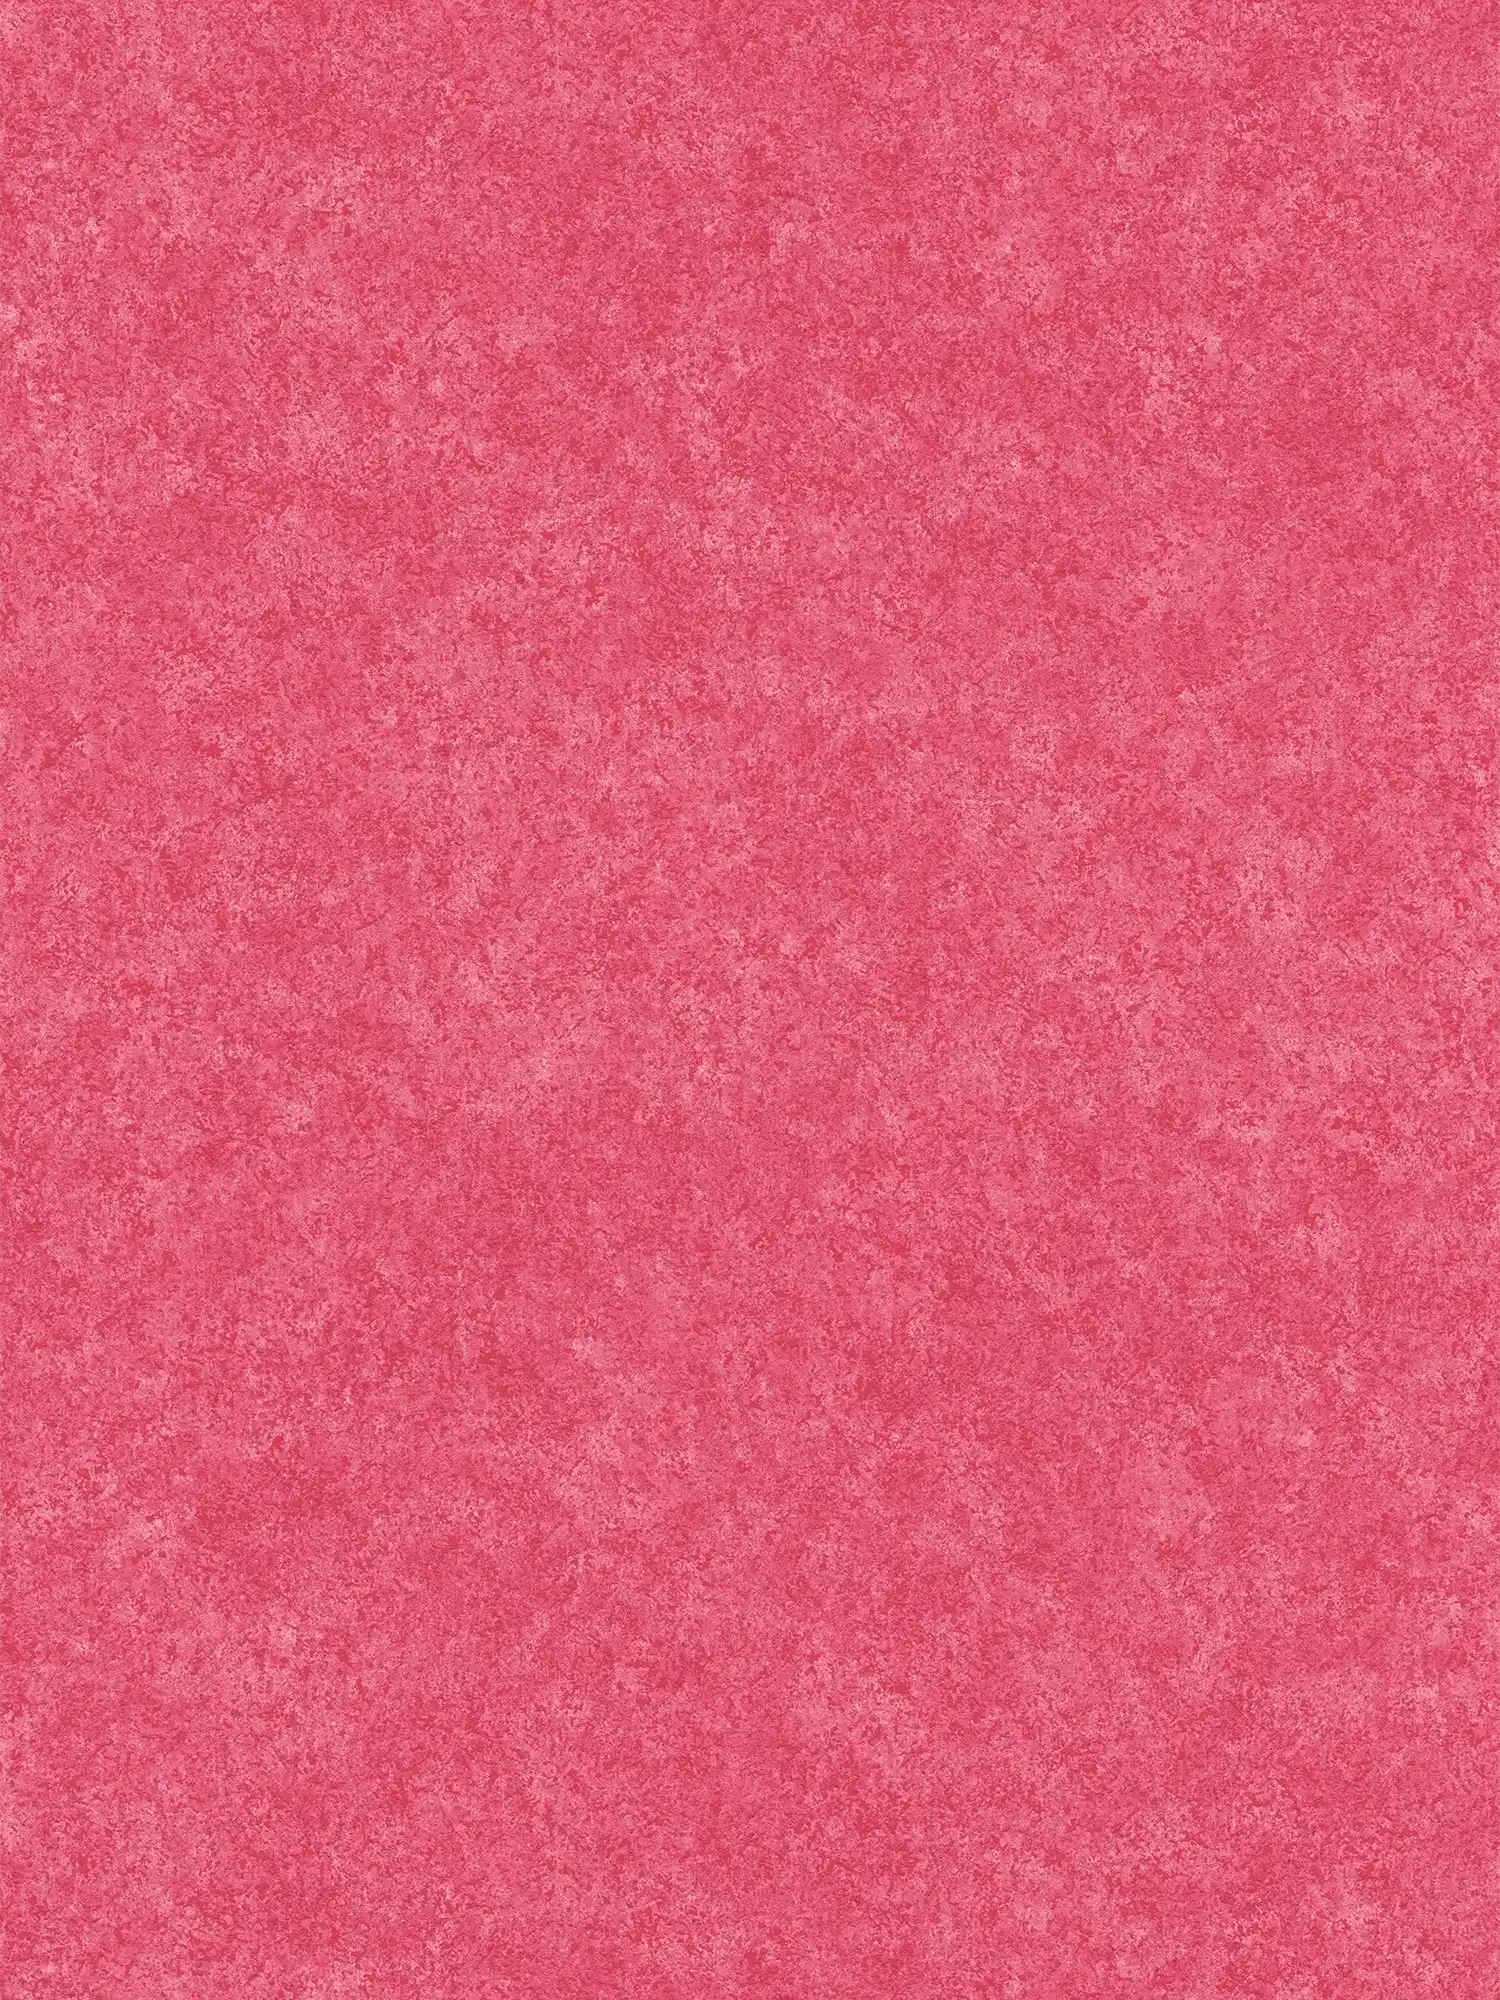 Roze vliesbehang met gevlekte gipslook - rood
